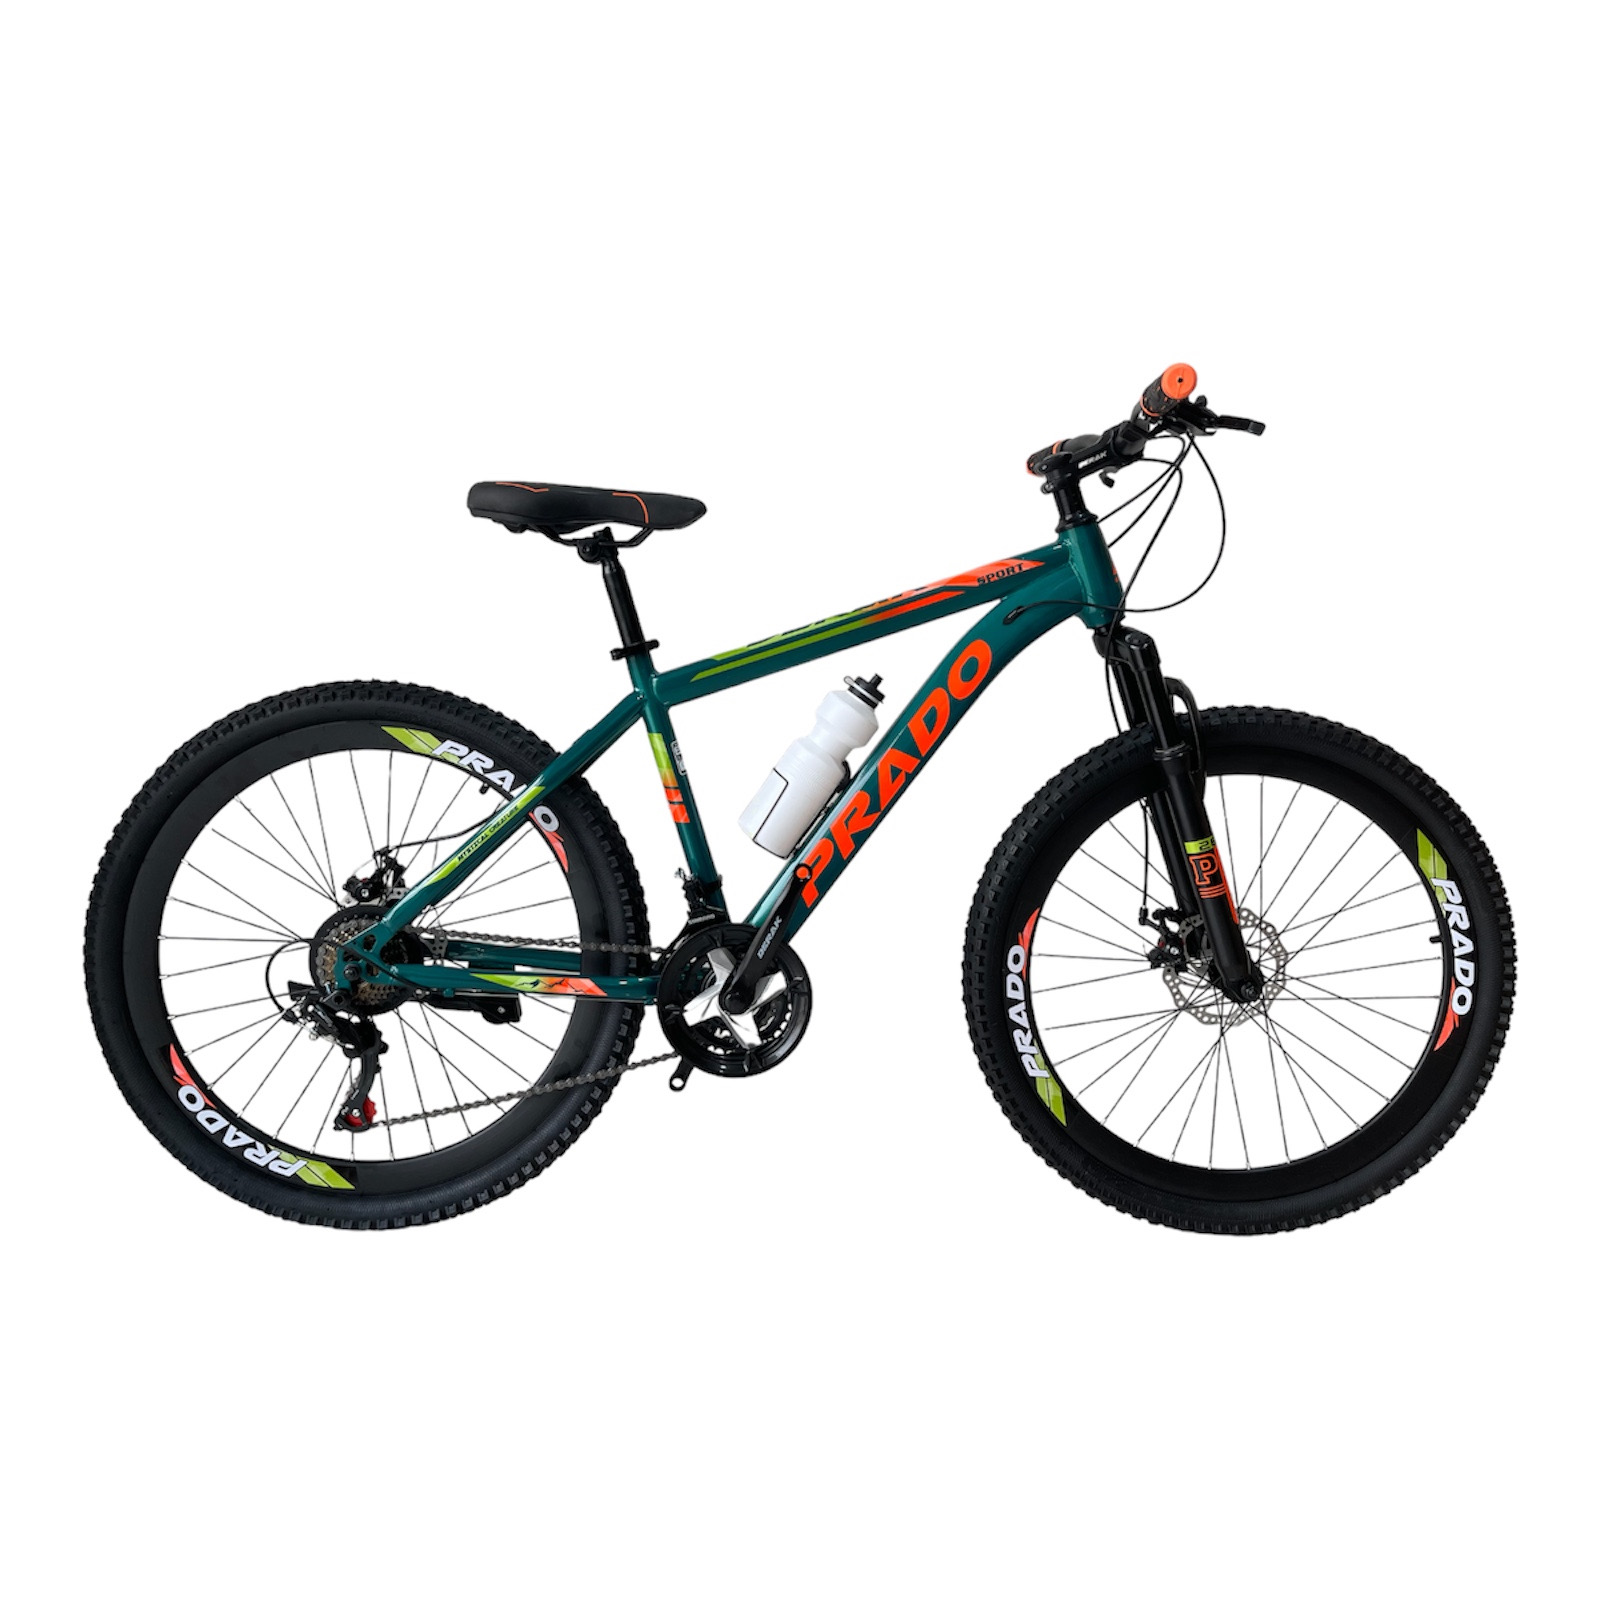 نکته خرید - قیمت روز دوچرخه کوهستان دراک مدل پرادو سایز طوقه 26 خرید